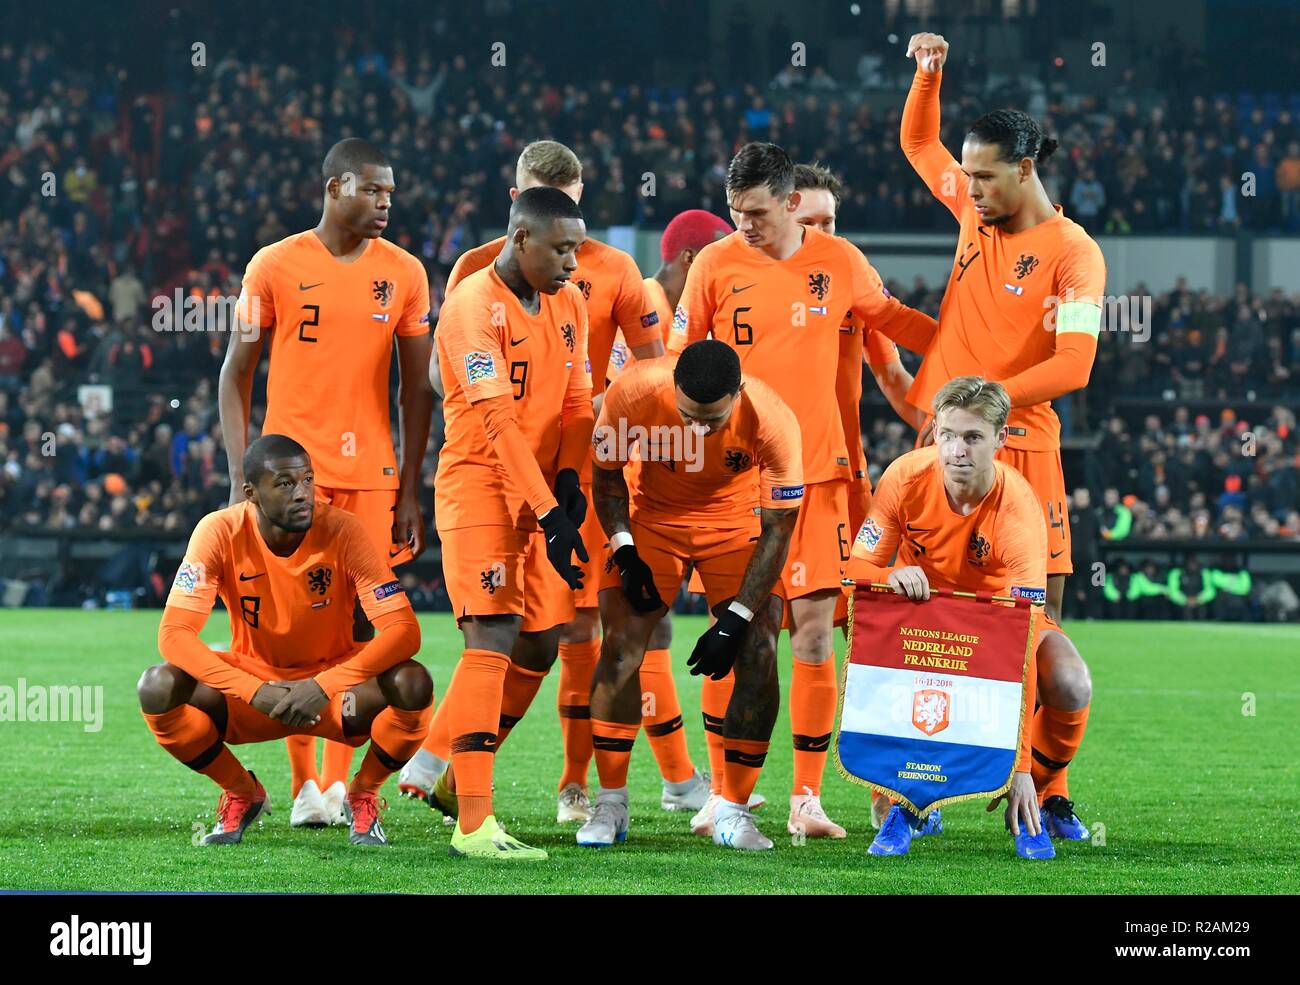 Nederlands elftal hi-res and images - Alamy